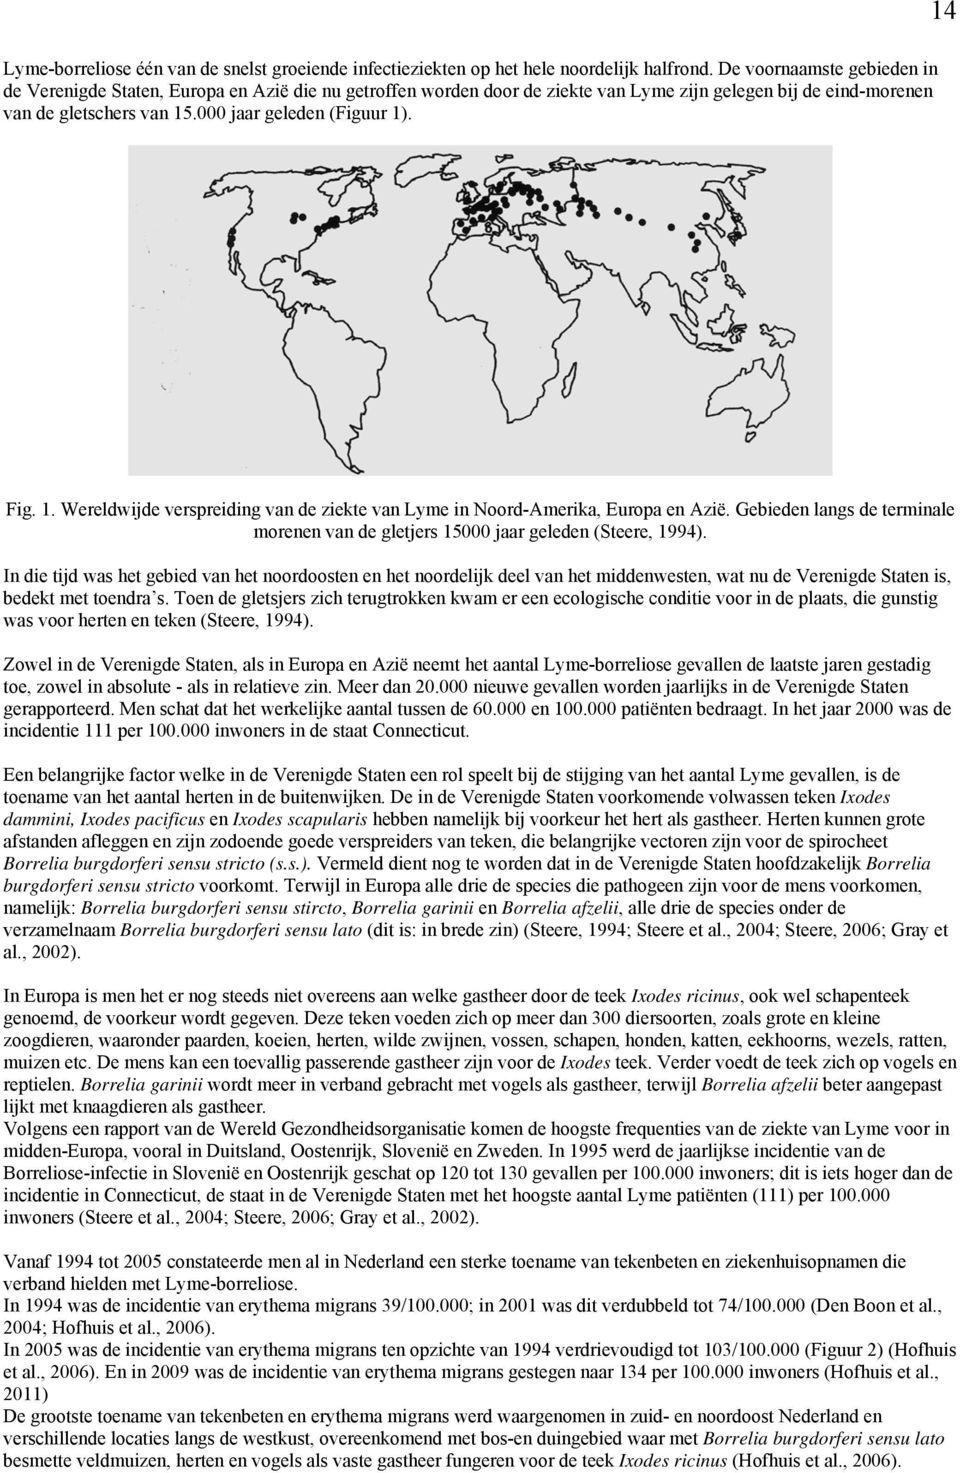 Fig. 1. Wereldwijde verspreiding van de ziekte van Lyme in Noord-Amerika, Europa en Azië. Gebieden langs de terminale morenen van de gletjers 15000 jaar geleden (Steere, 1994).